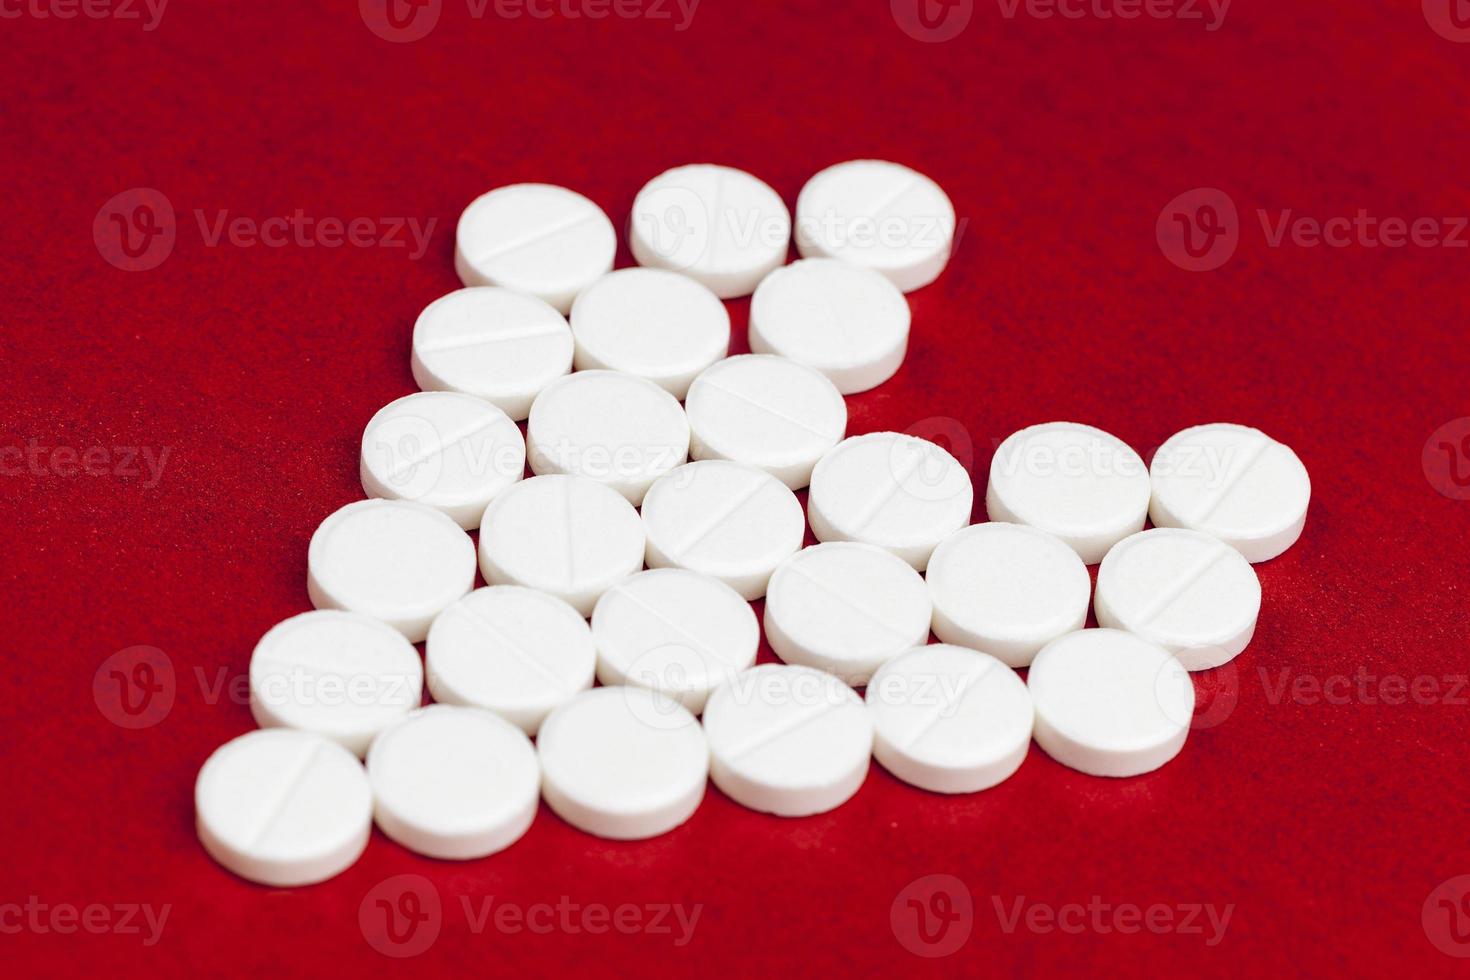 medische medicijnen tabletten gestapeld op een rode achtergrond in de vorm van een hart foto